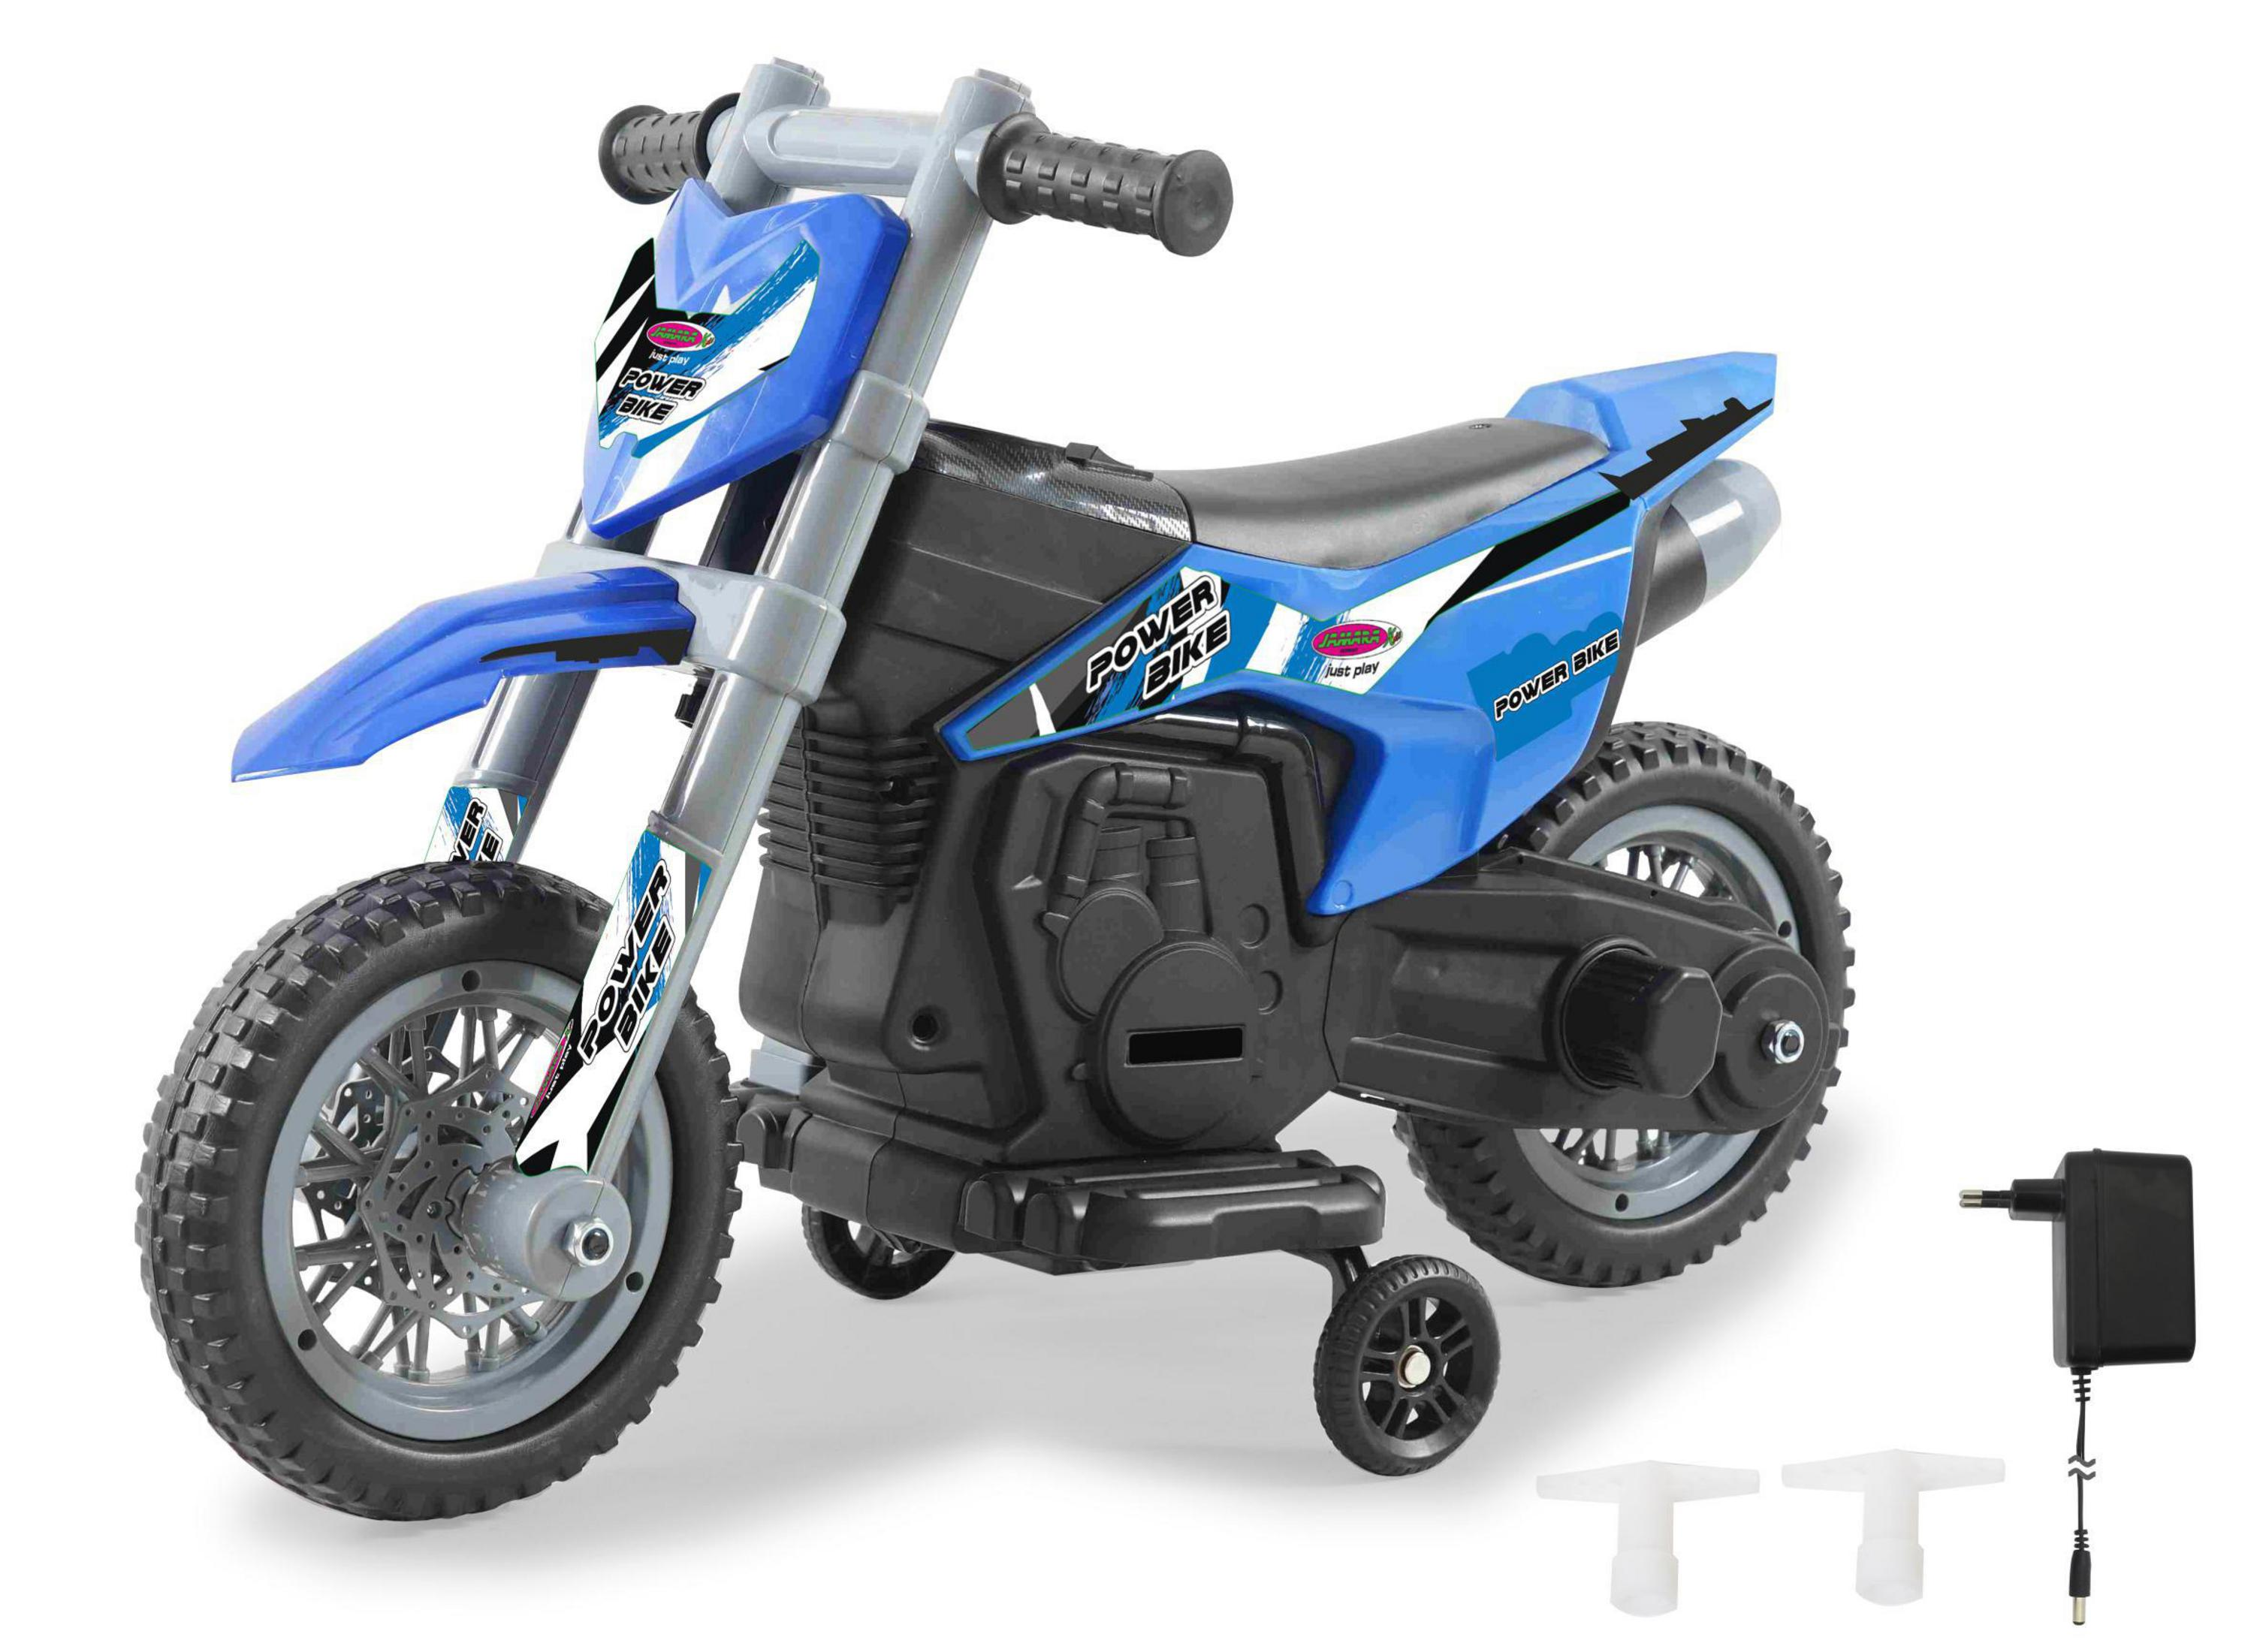 Ride-On JAMARA POWER Blau RIDE-ON 460678 Kinderfahrzeug, BIKE BLAU 6V MOTORRAD